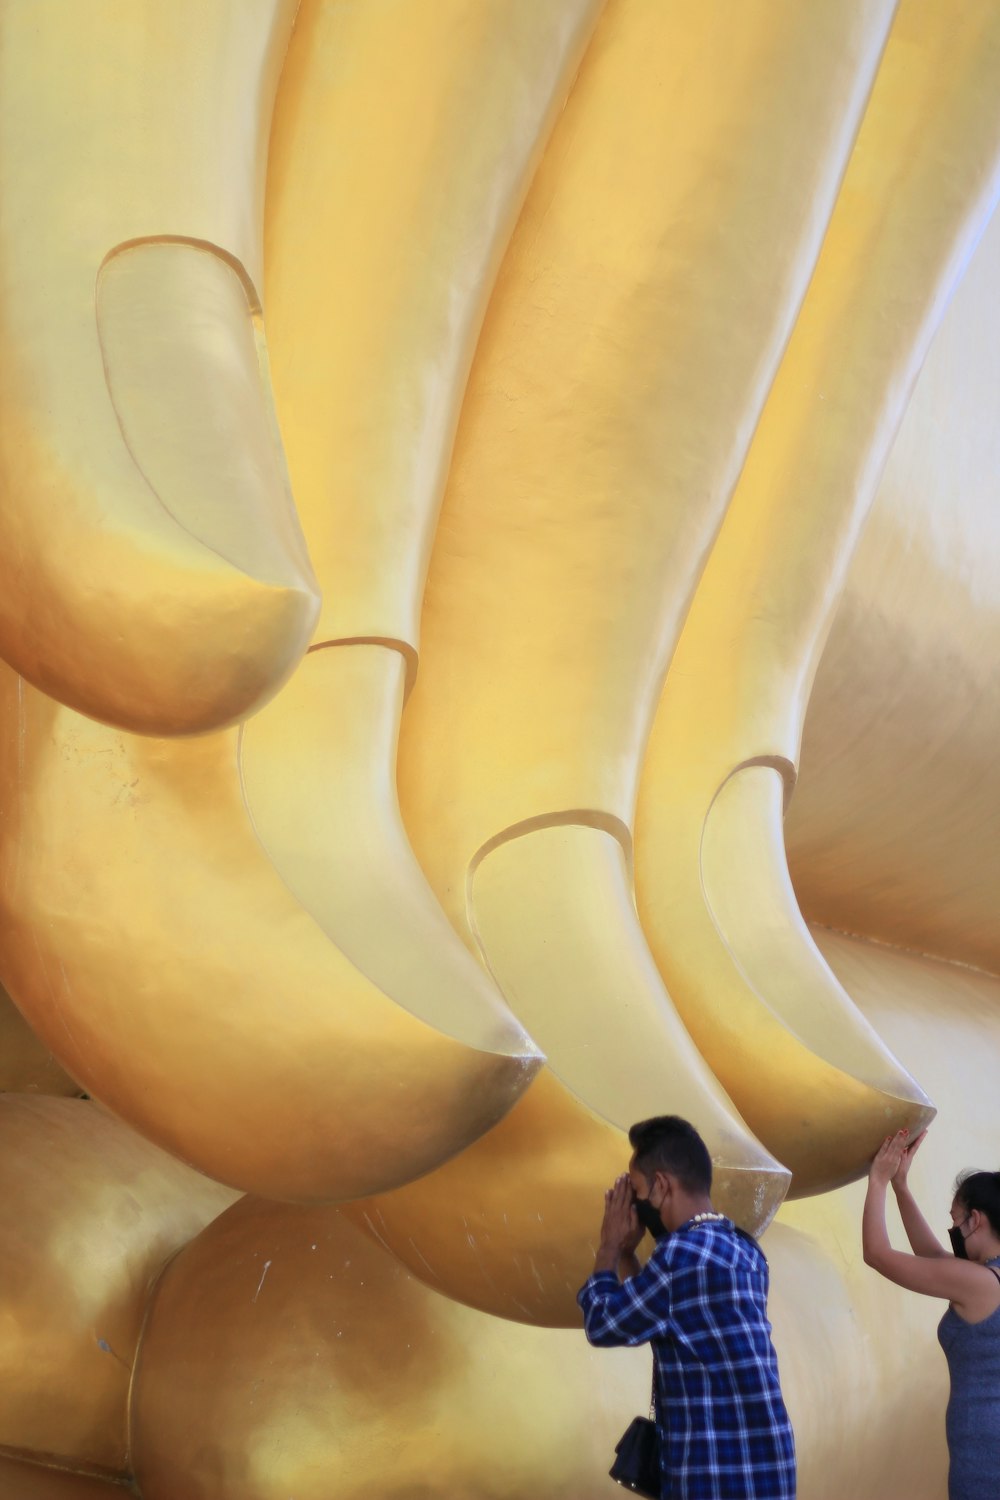 거대한 바나나 조각 앞에 서 있는 남자와 여자